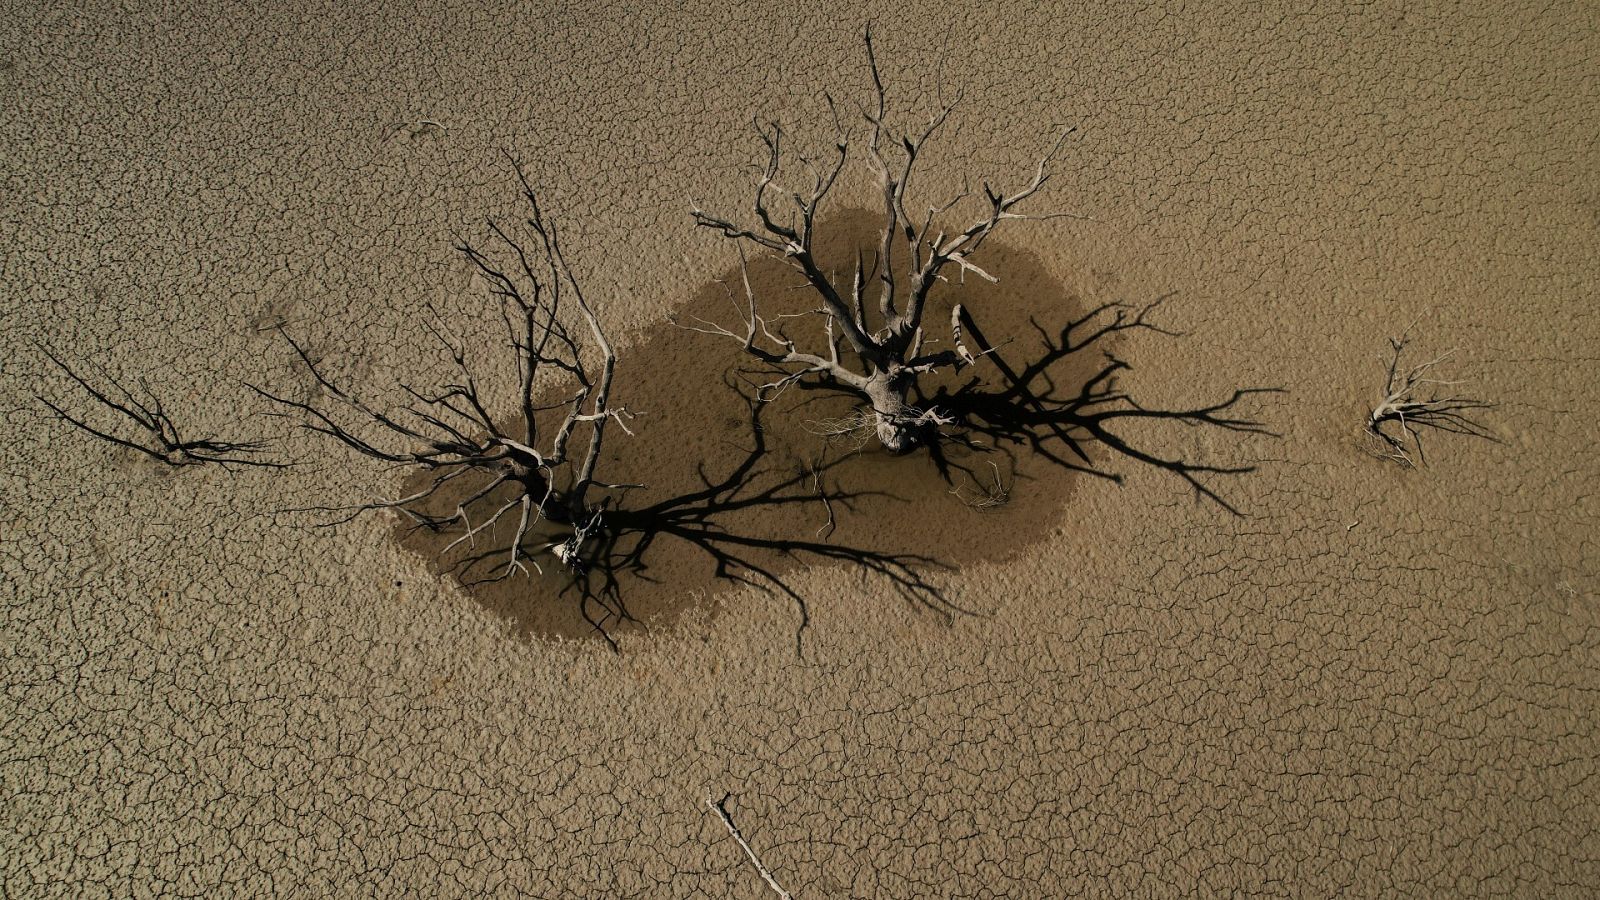 Imagen tomada desde un dron de un desolador paisaje en el pantano de Yesa, Zaragoza